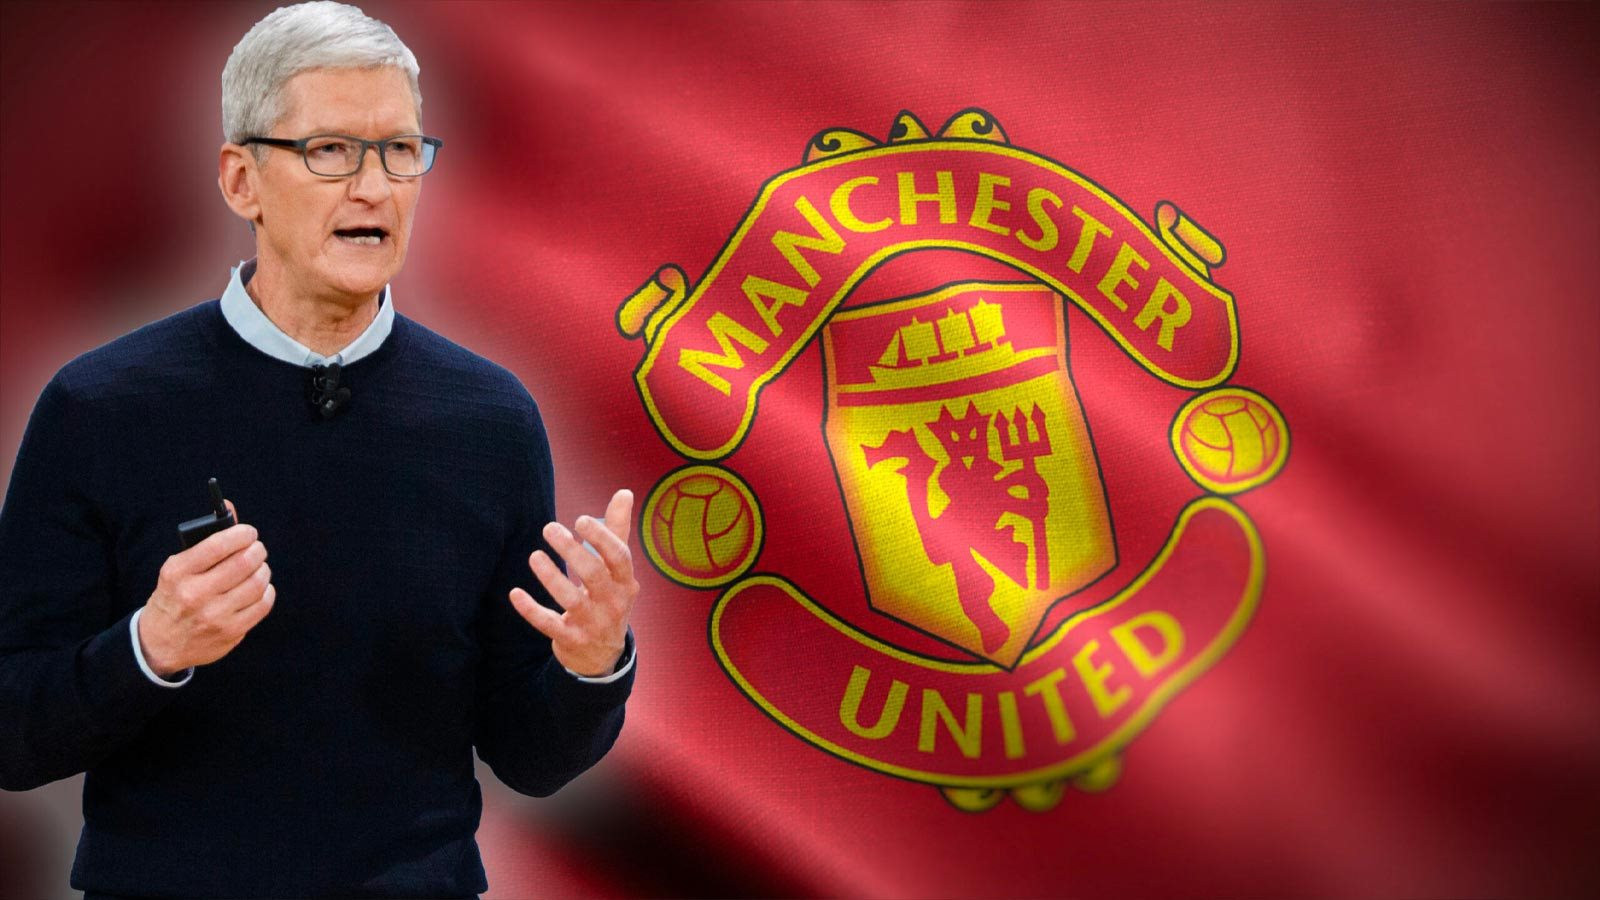 Apple tham gia đường đua 'thâu tóm' Manchester United